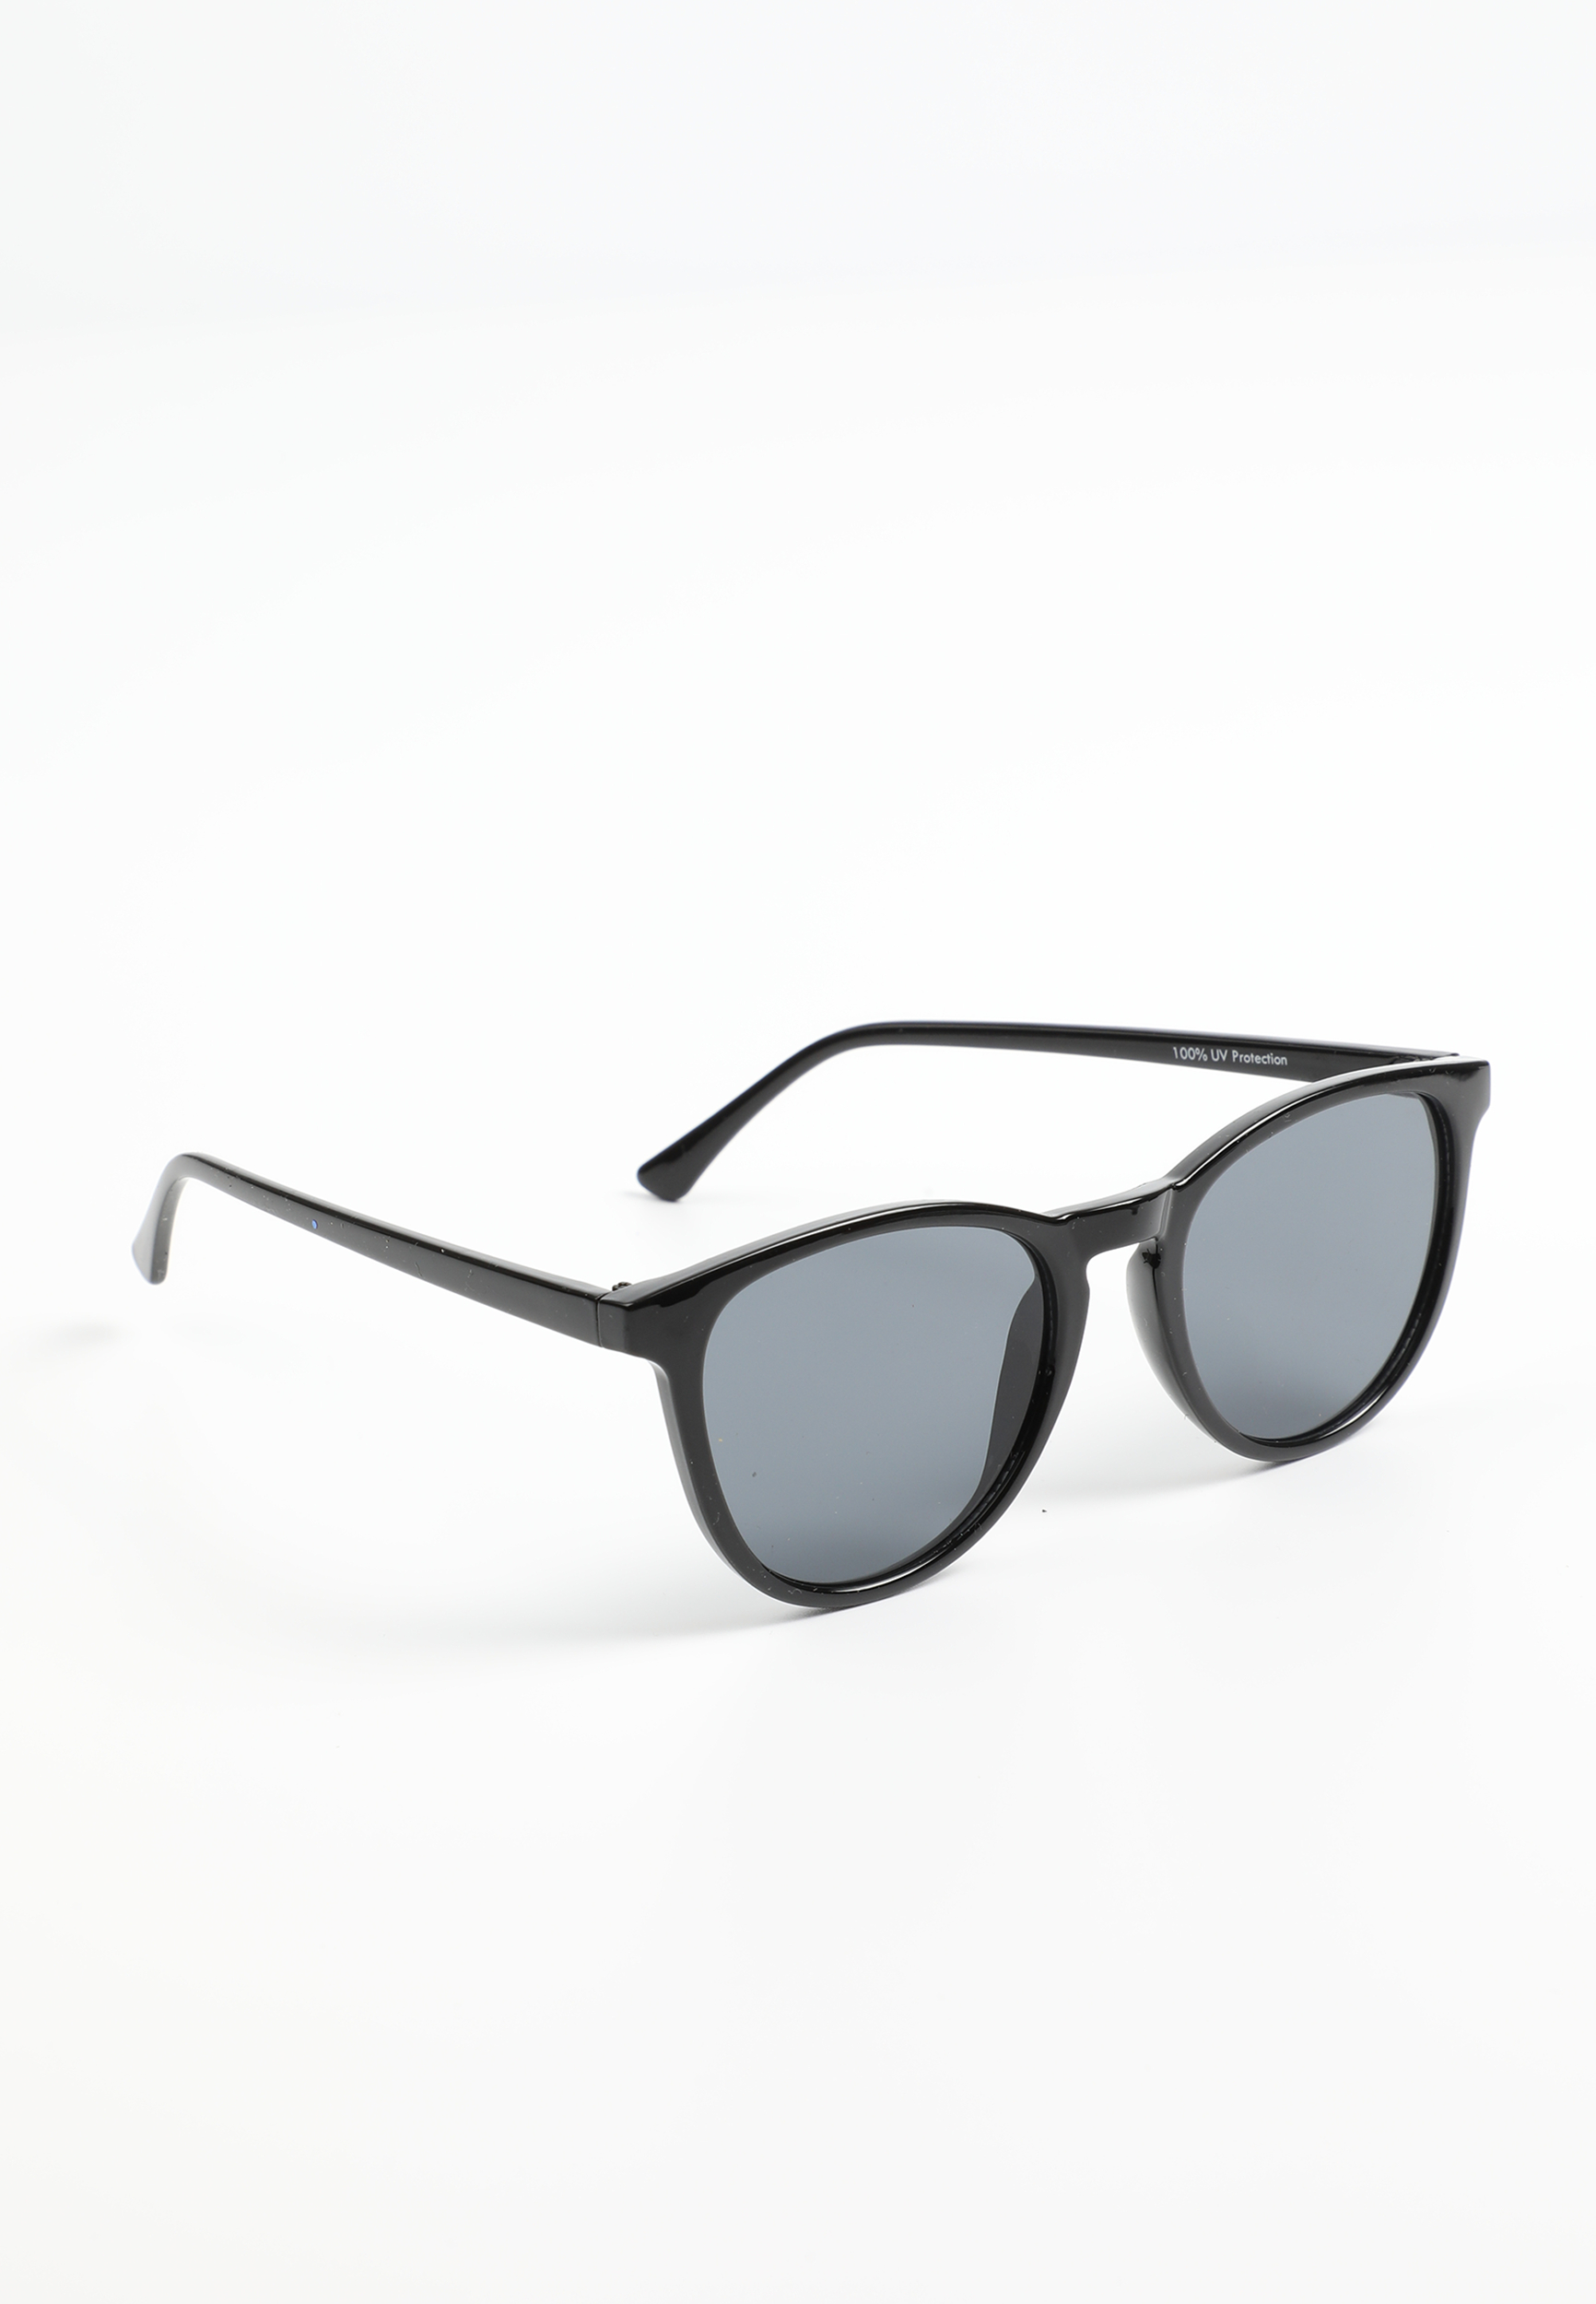 Daytripper Round Black Sunglasses